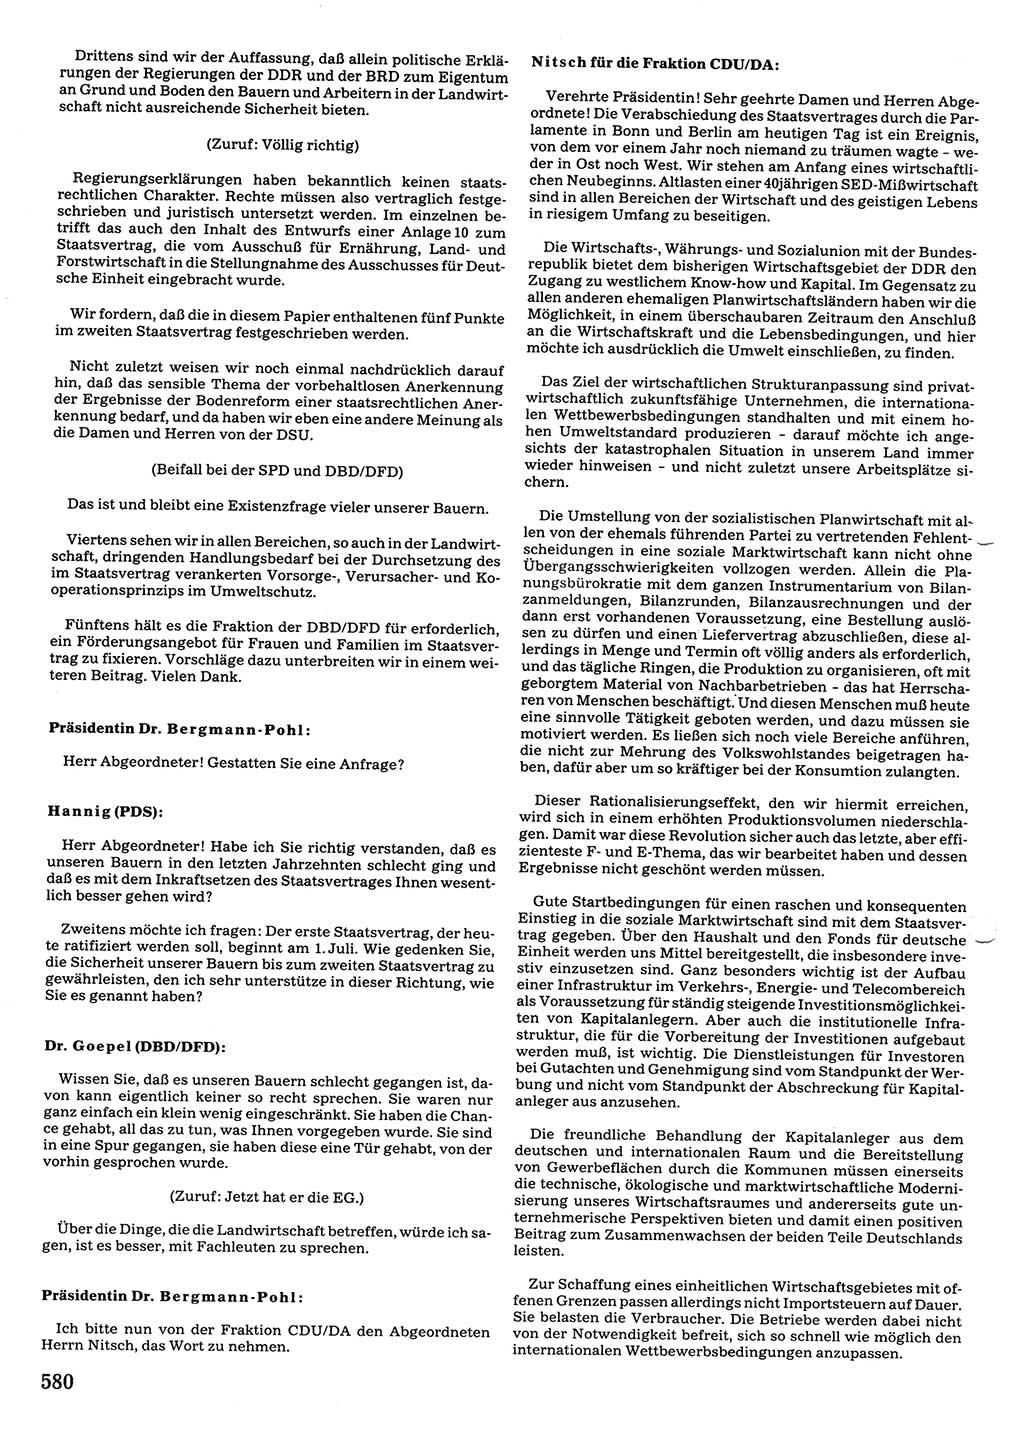 Tagungen der Volkskammer (VK) der Deutschen Demokratischen Republik (DDR), 10. Wahlperiode 1990, Seite 580 (VK. DDR 10. WP. 1990, Prot. Tg. 1-38, 5.4.-2.10.1990, S. 580)